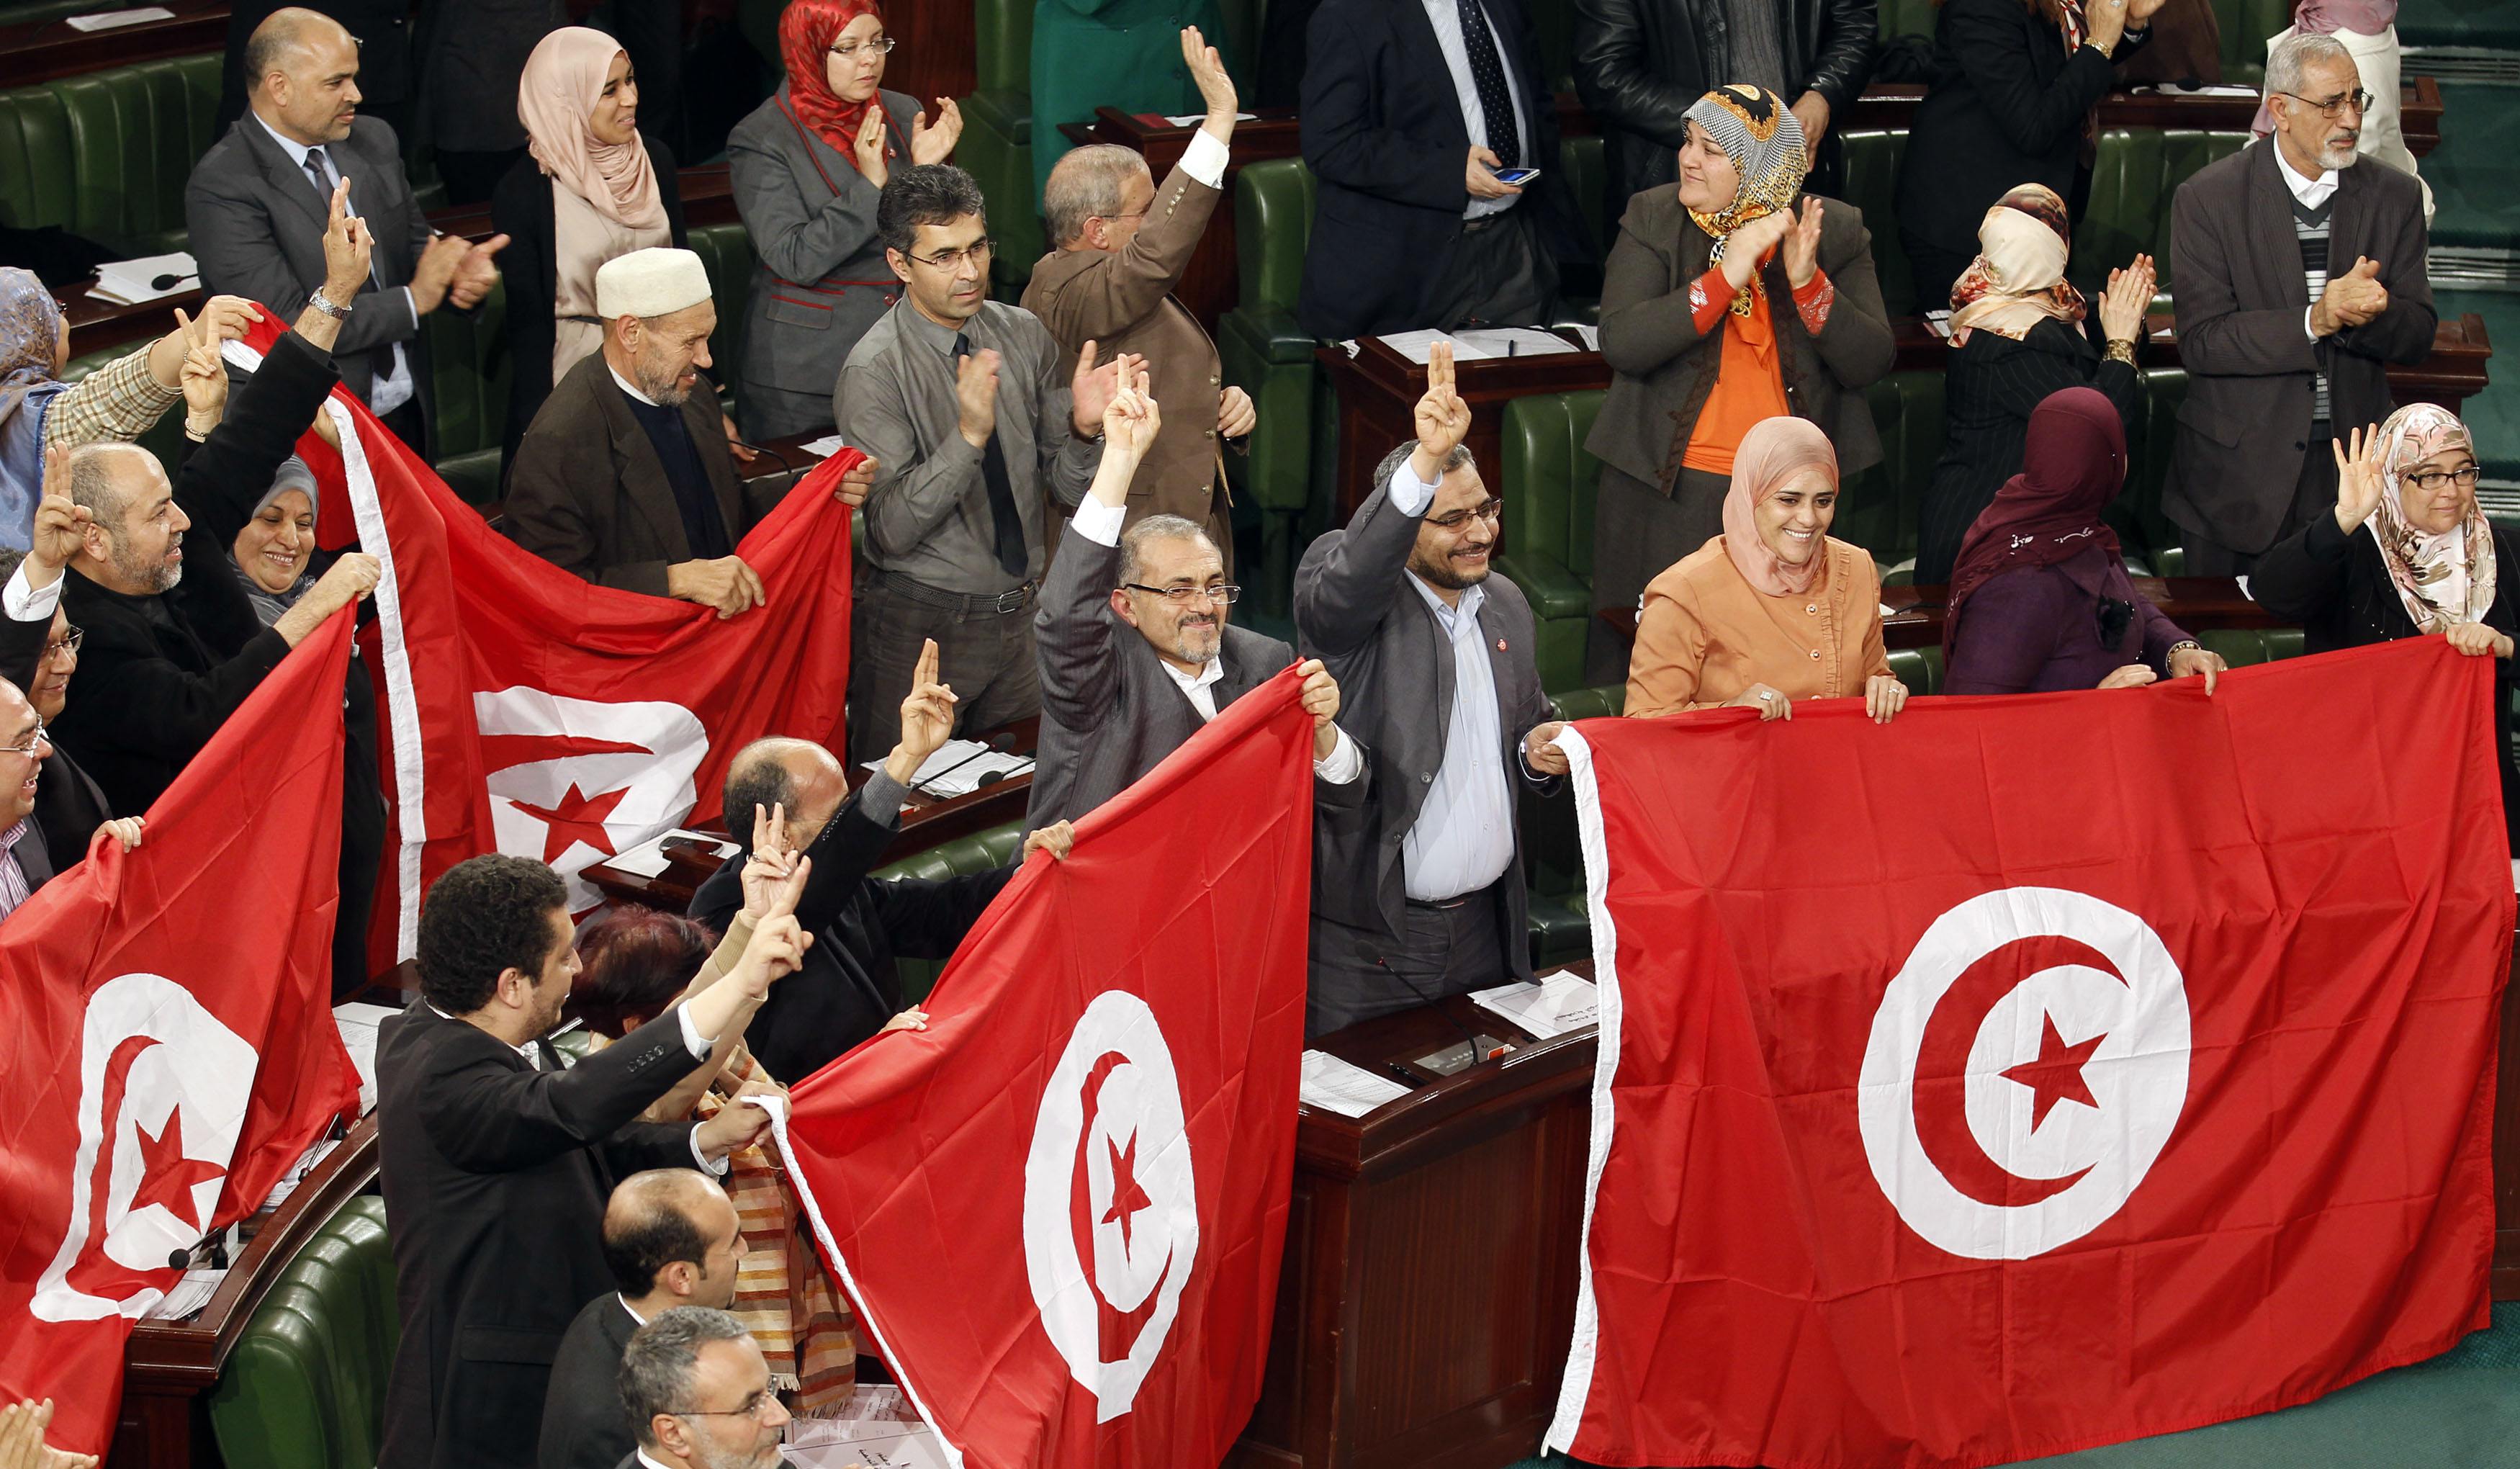 البرلمان التونسي يثير جدلا حول قرض 100مليون دولار  تسلمه من الجزائر